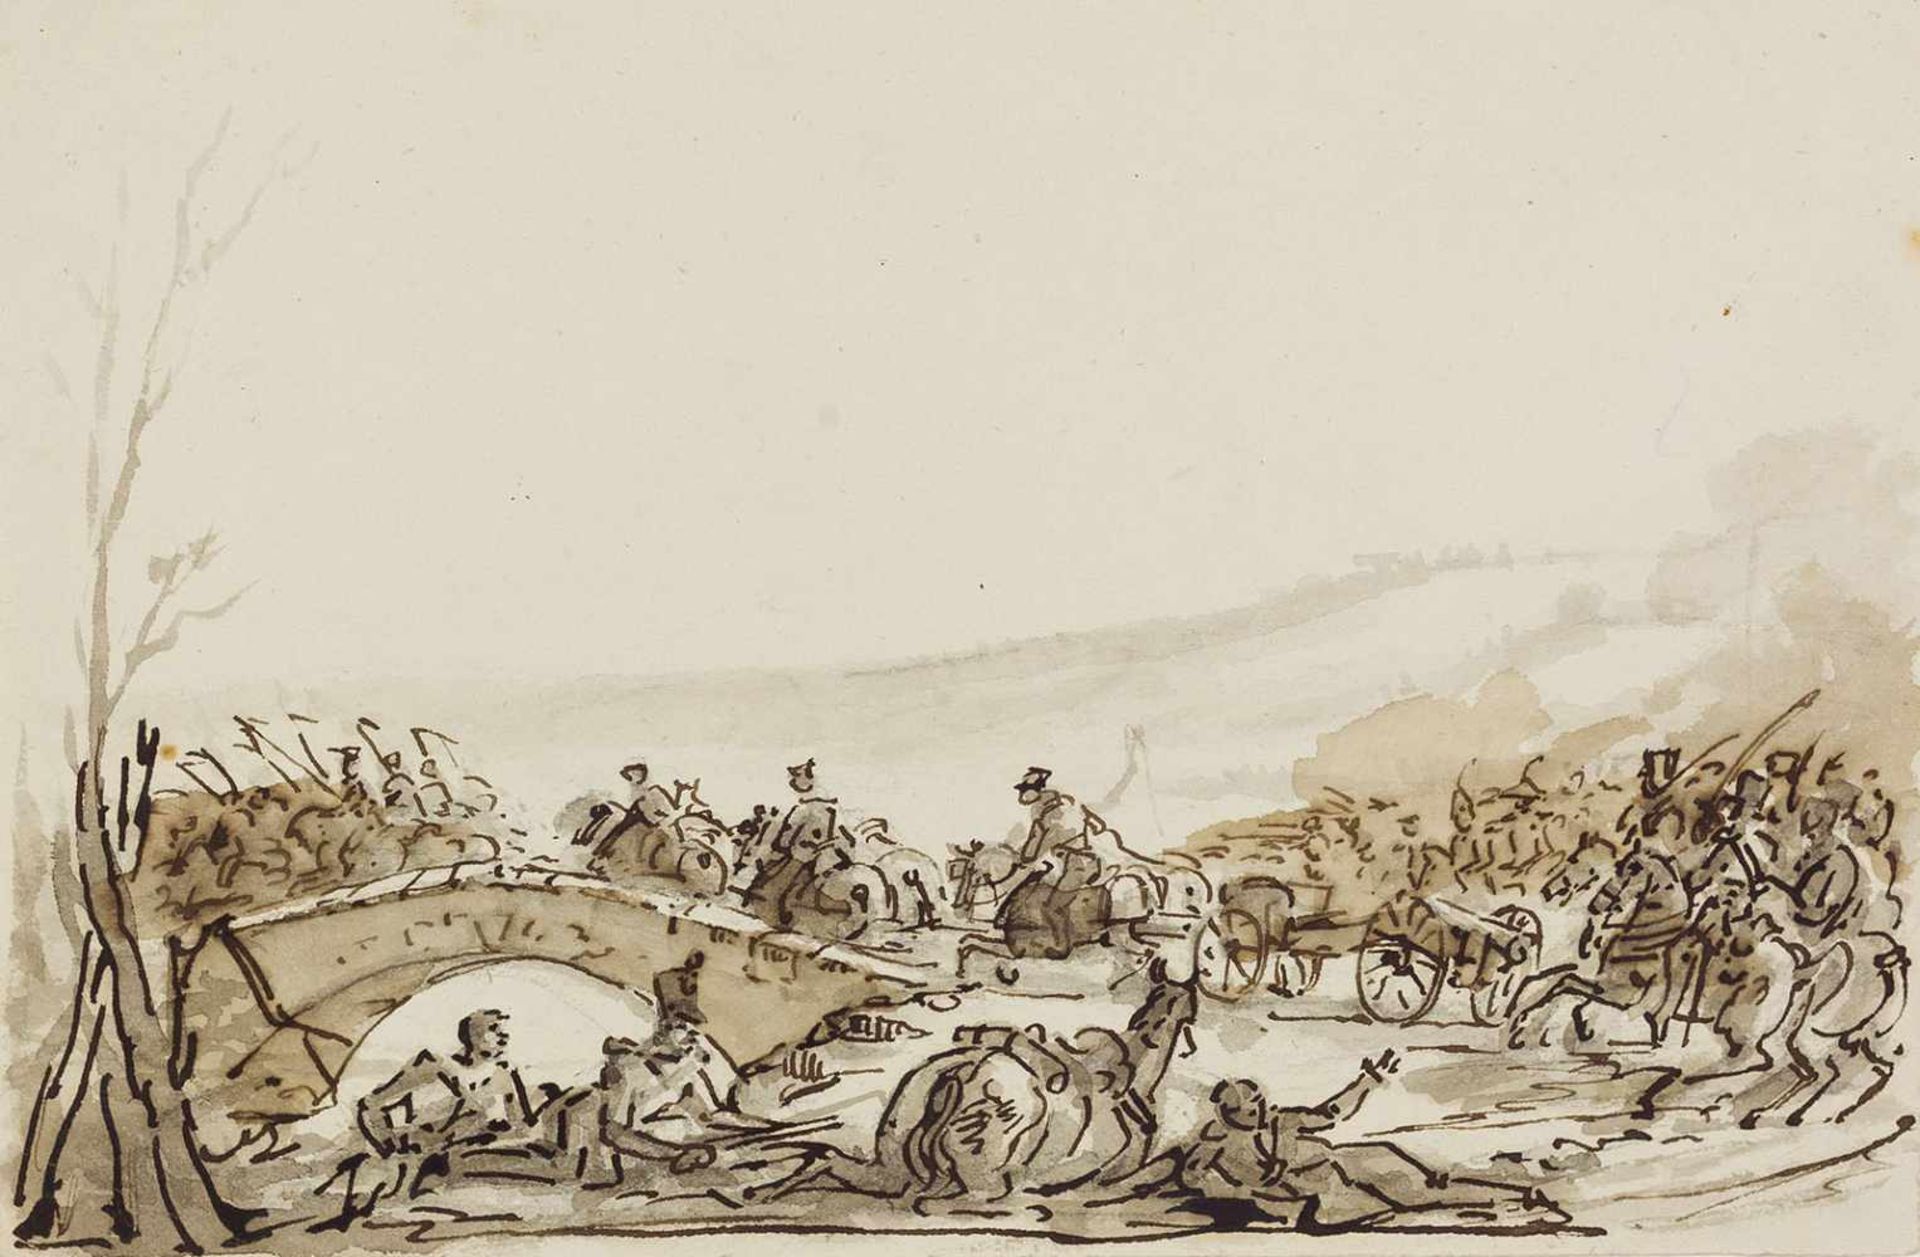 Zais, Giuseppe "(1709-1784). Kavallerie jagt über die Brücke. Zeichnung. Tuschfeder, in Grau und